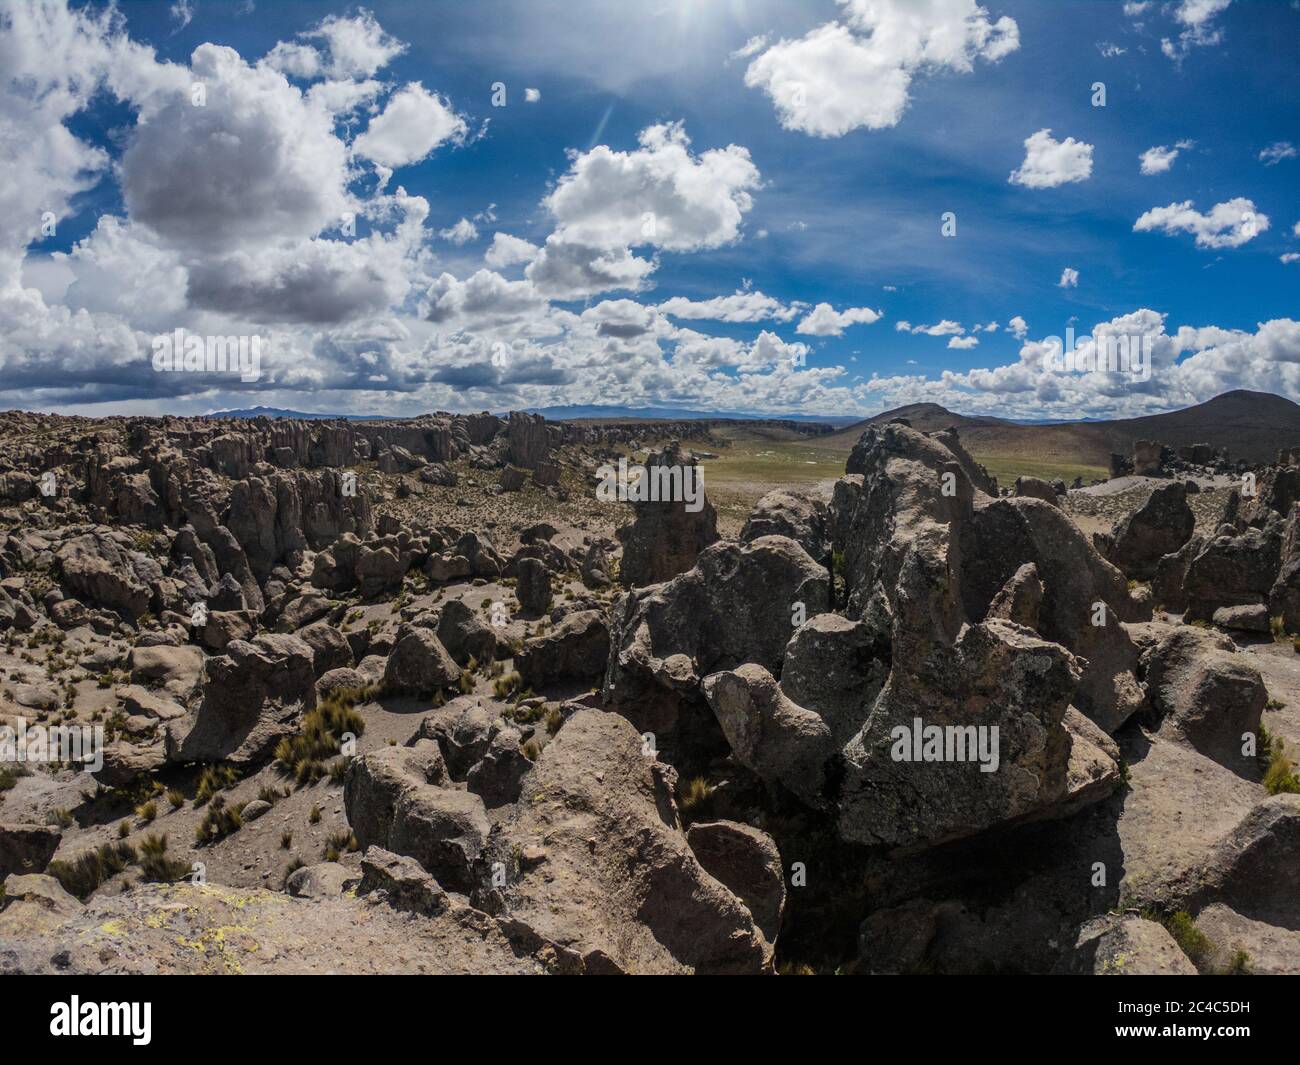 grande vallée de rochers, pas de gens, nuages et ciel bleu Banque D'Images